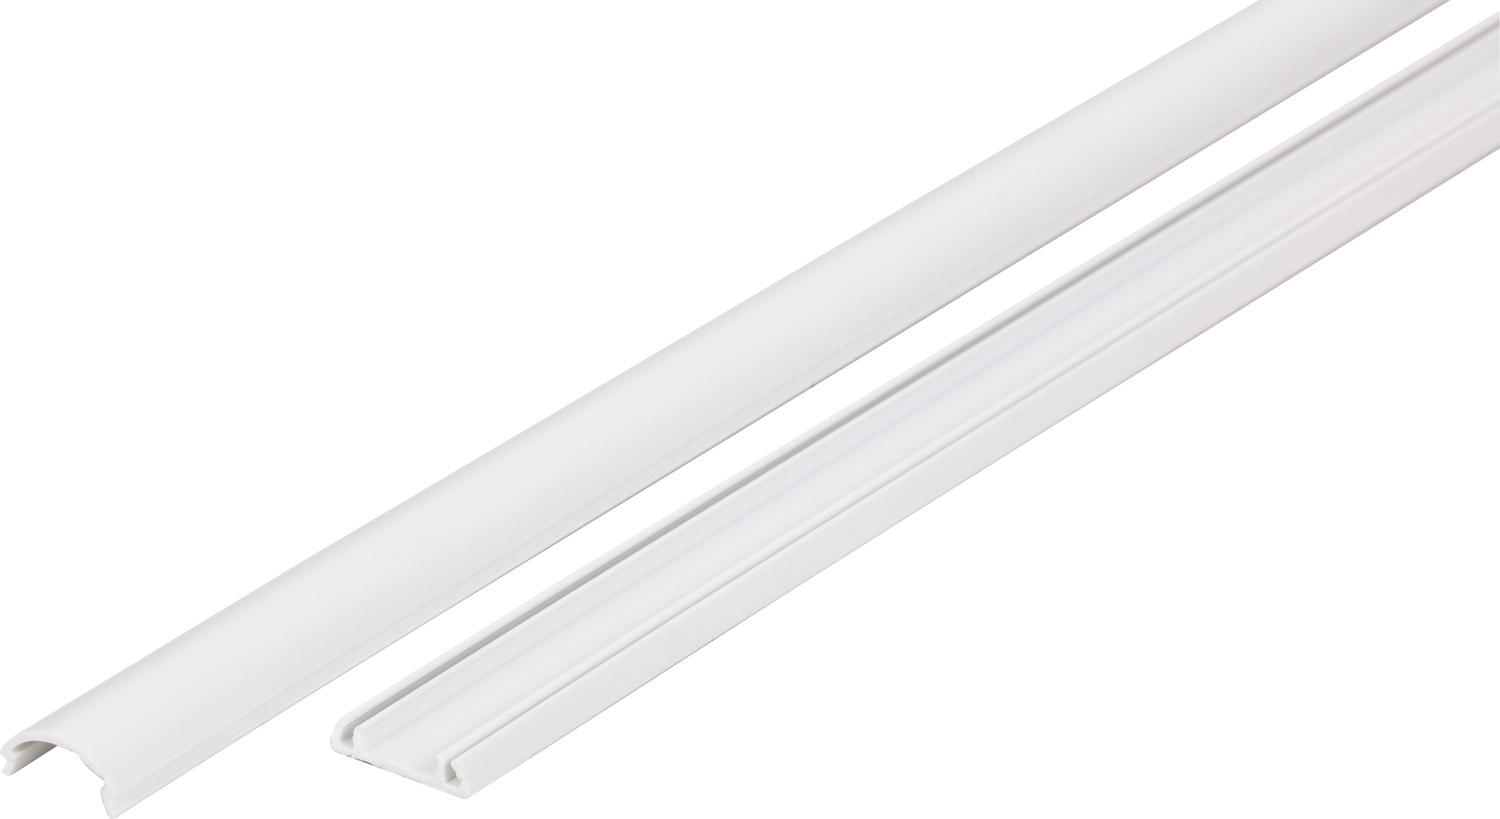 grey floor lamp with shelves Task Lighting Tape Light Housings White